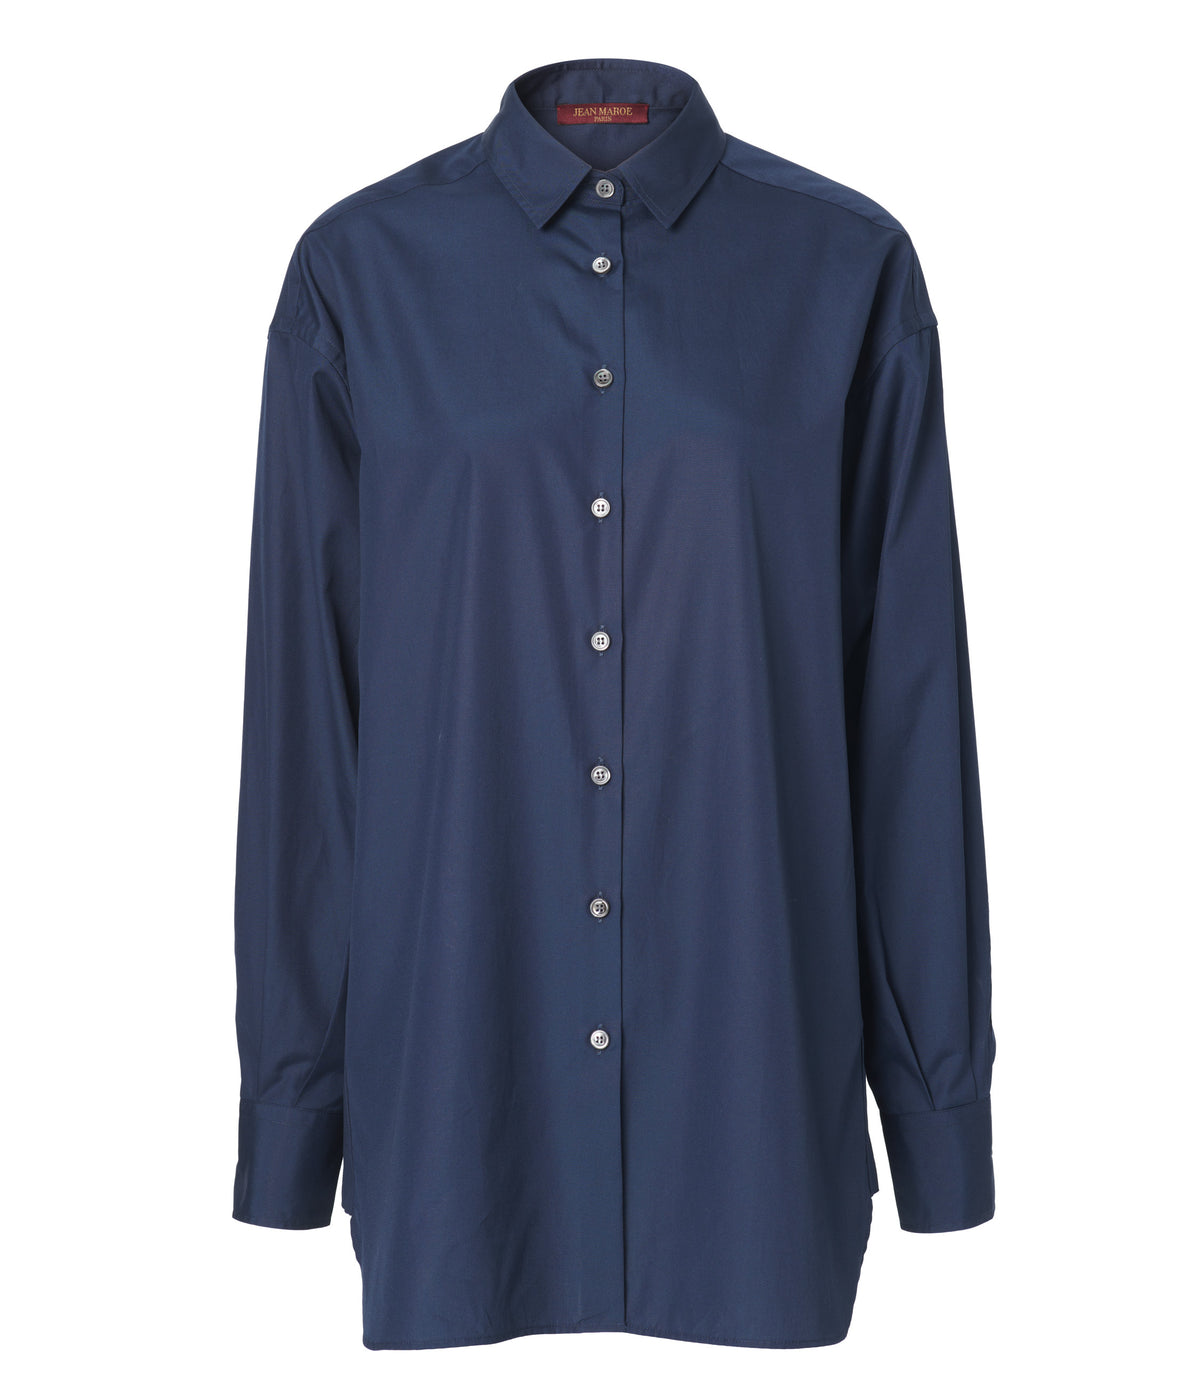 Jean Maroe - Bluse mit Knopfleiste aus Baumwolle in dunkelblau